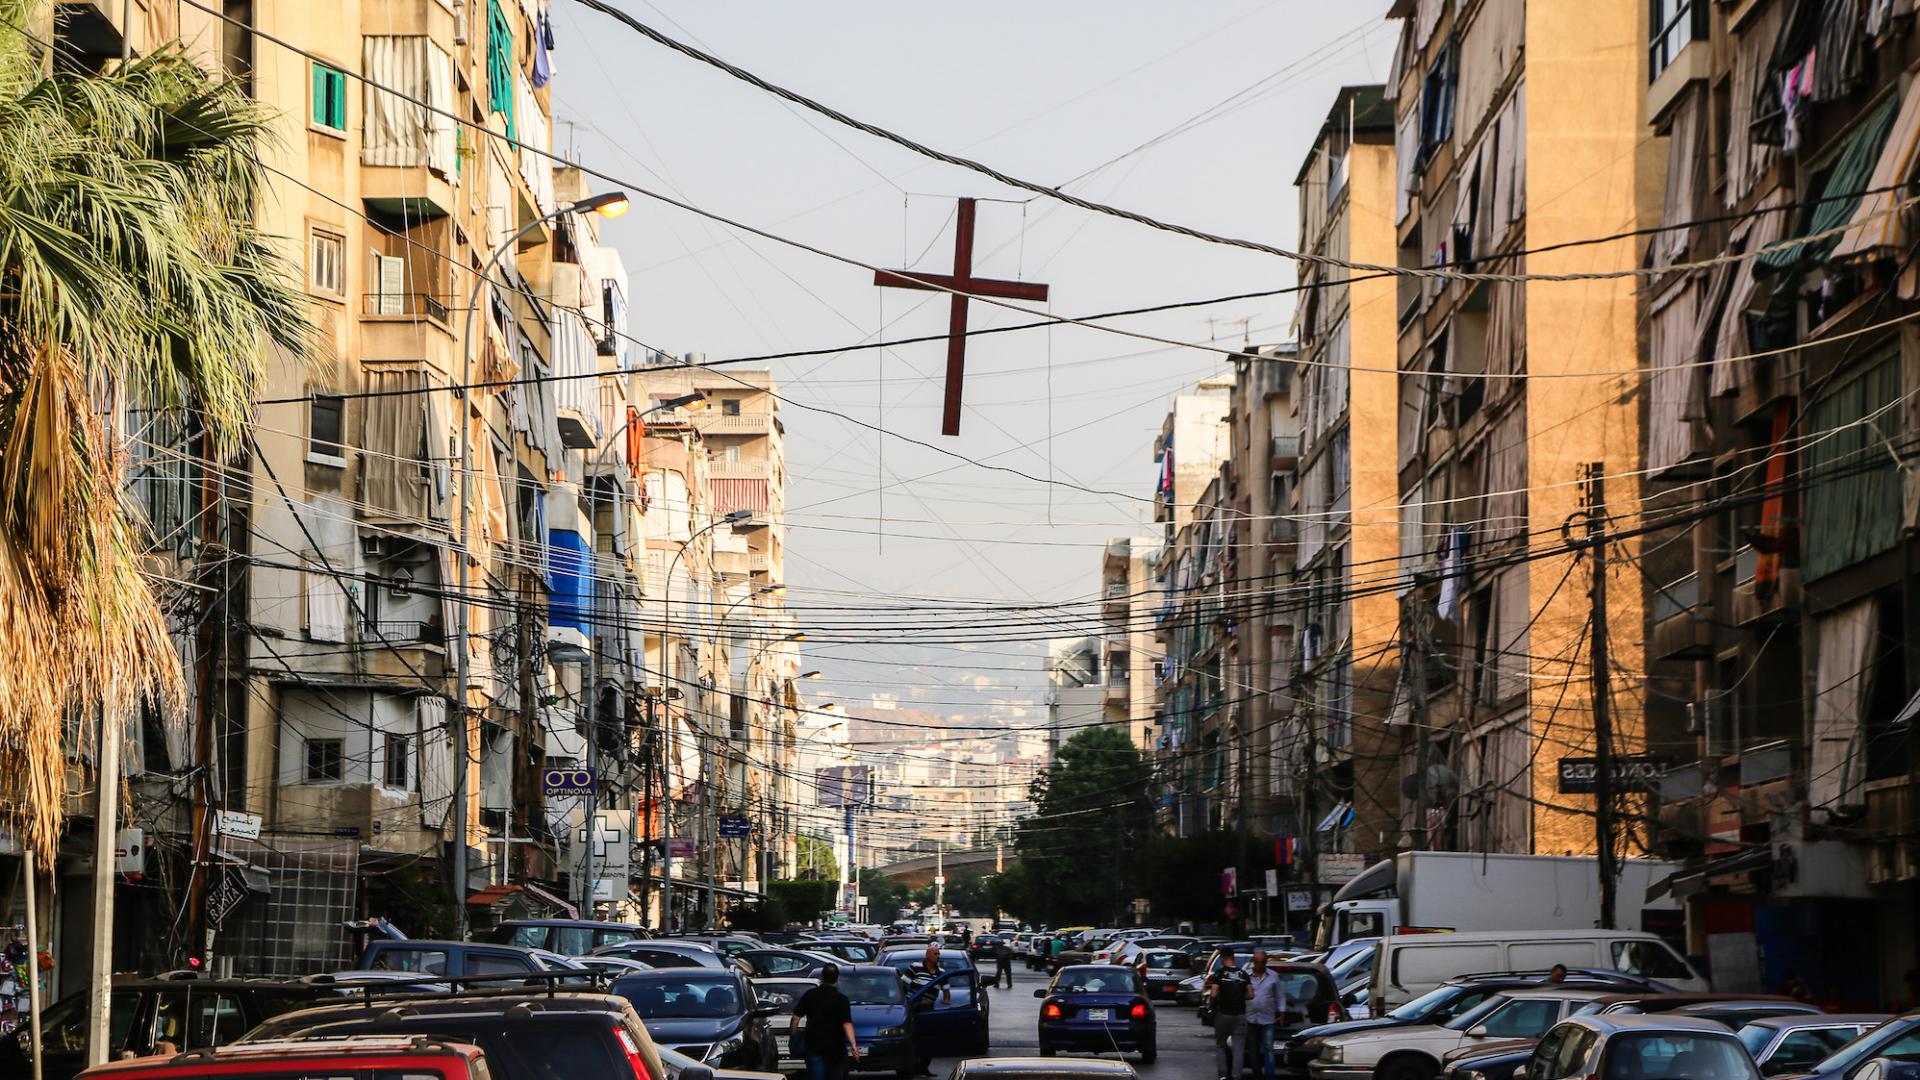 Libanon (via MERATH)